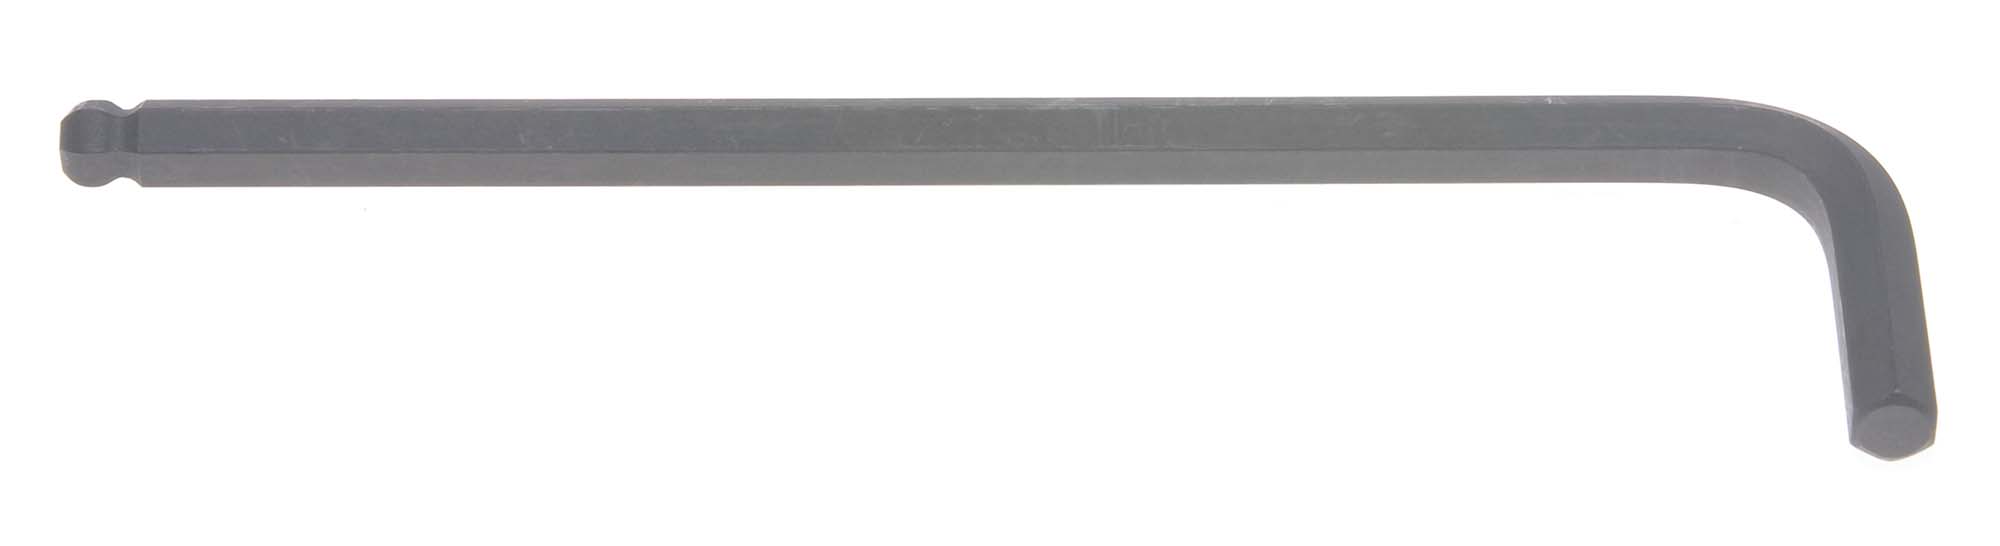 2mm Bondhus Balldriver L-Wrench Hex Key